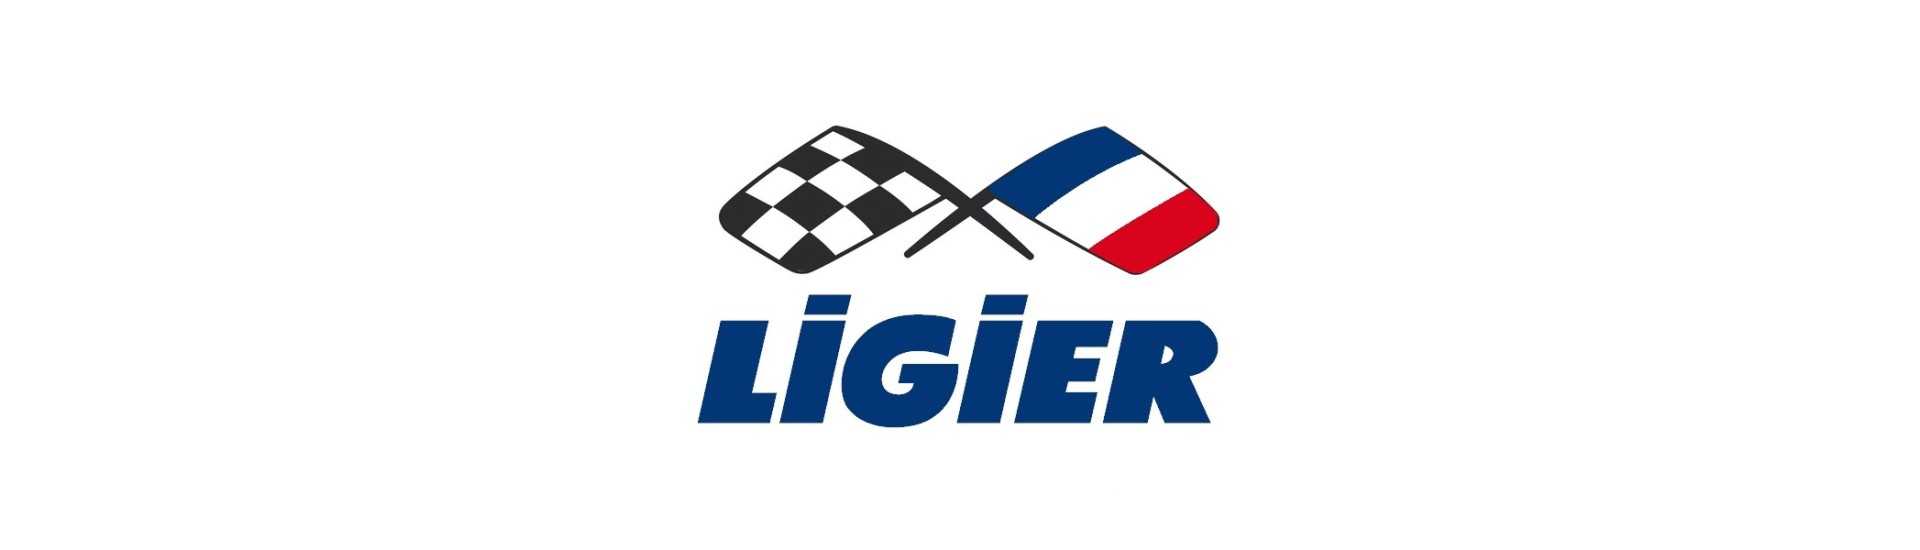 Potentiometro al miglior prezzo per auto senza permesso Ligier